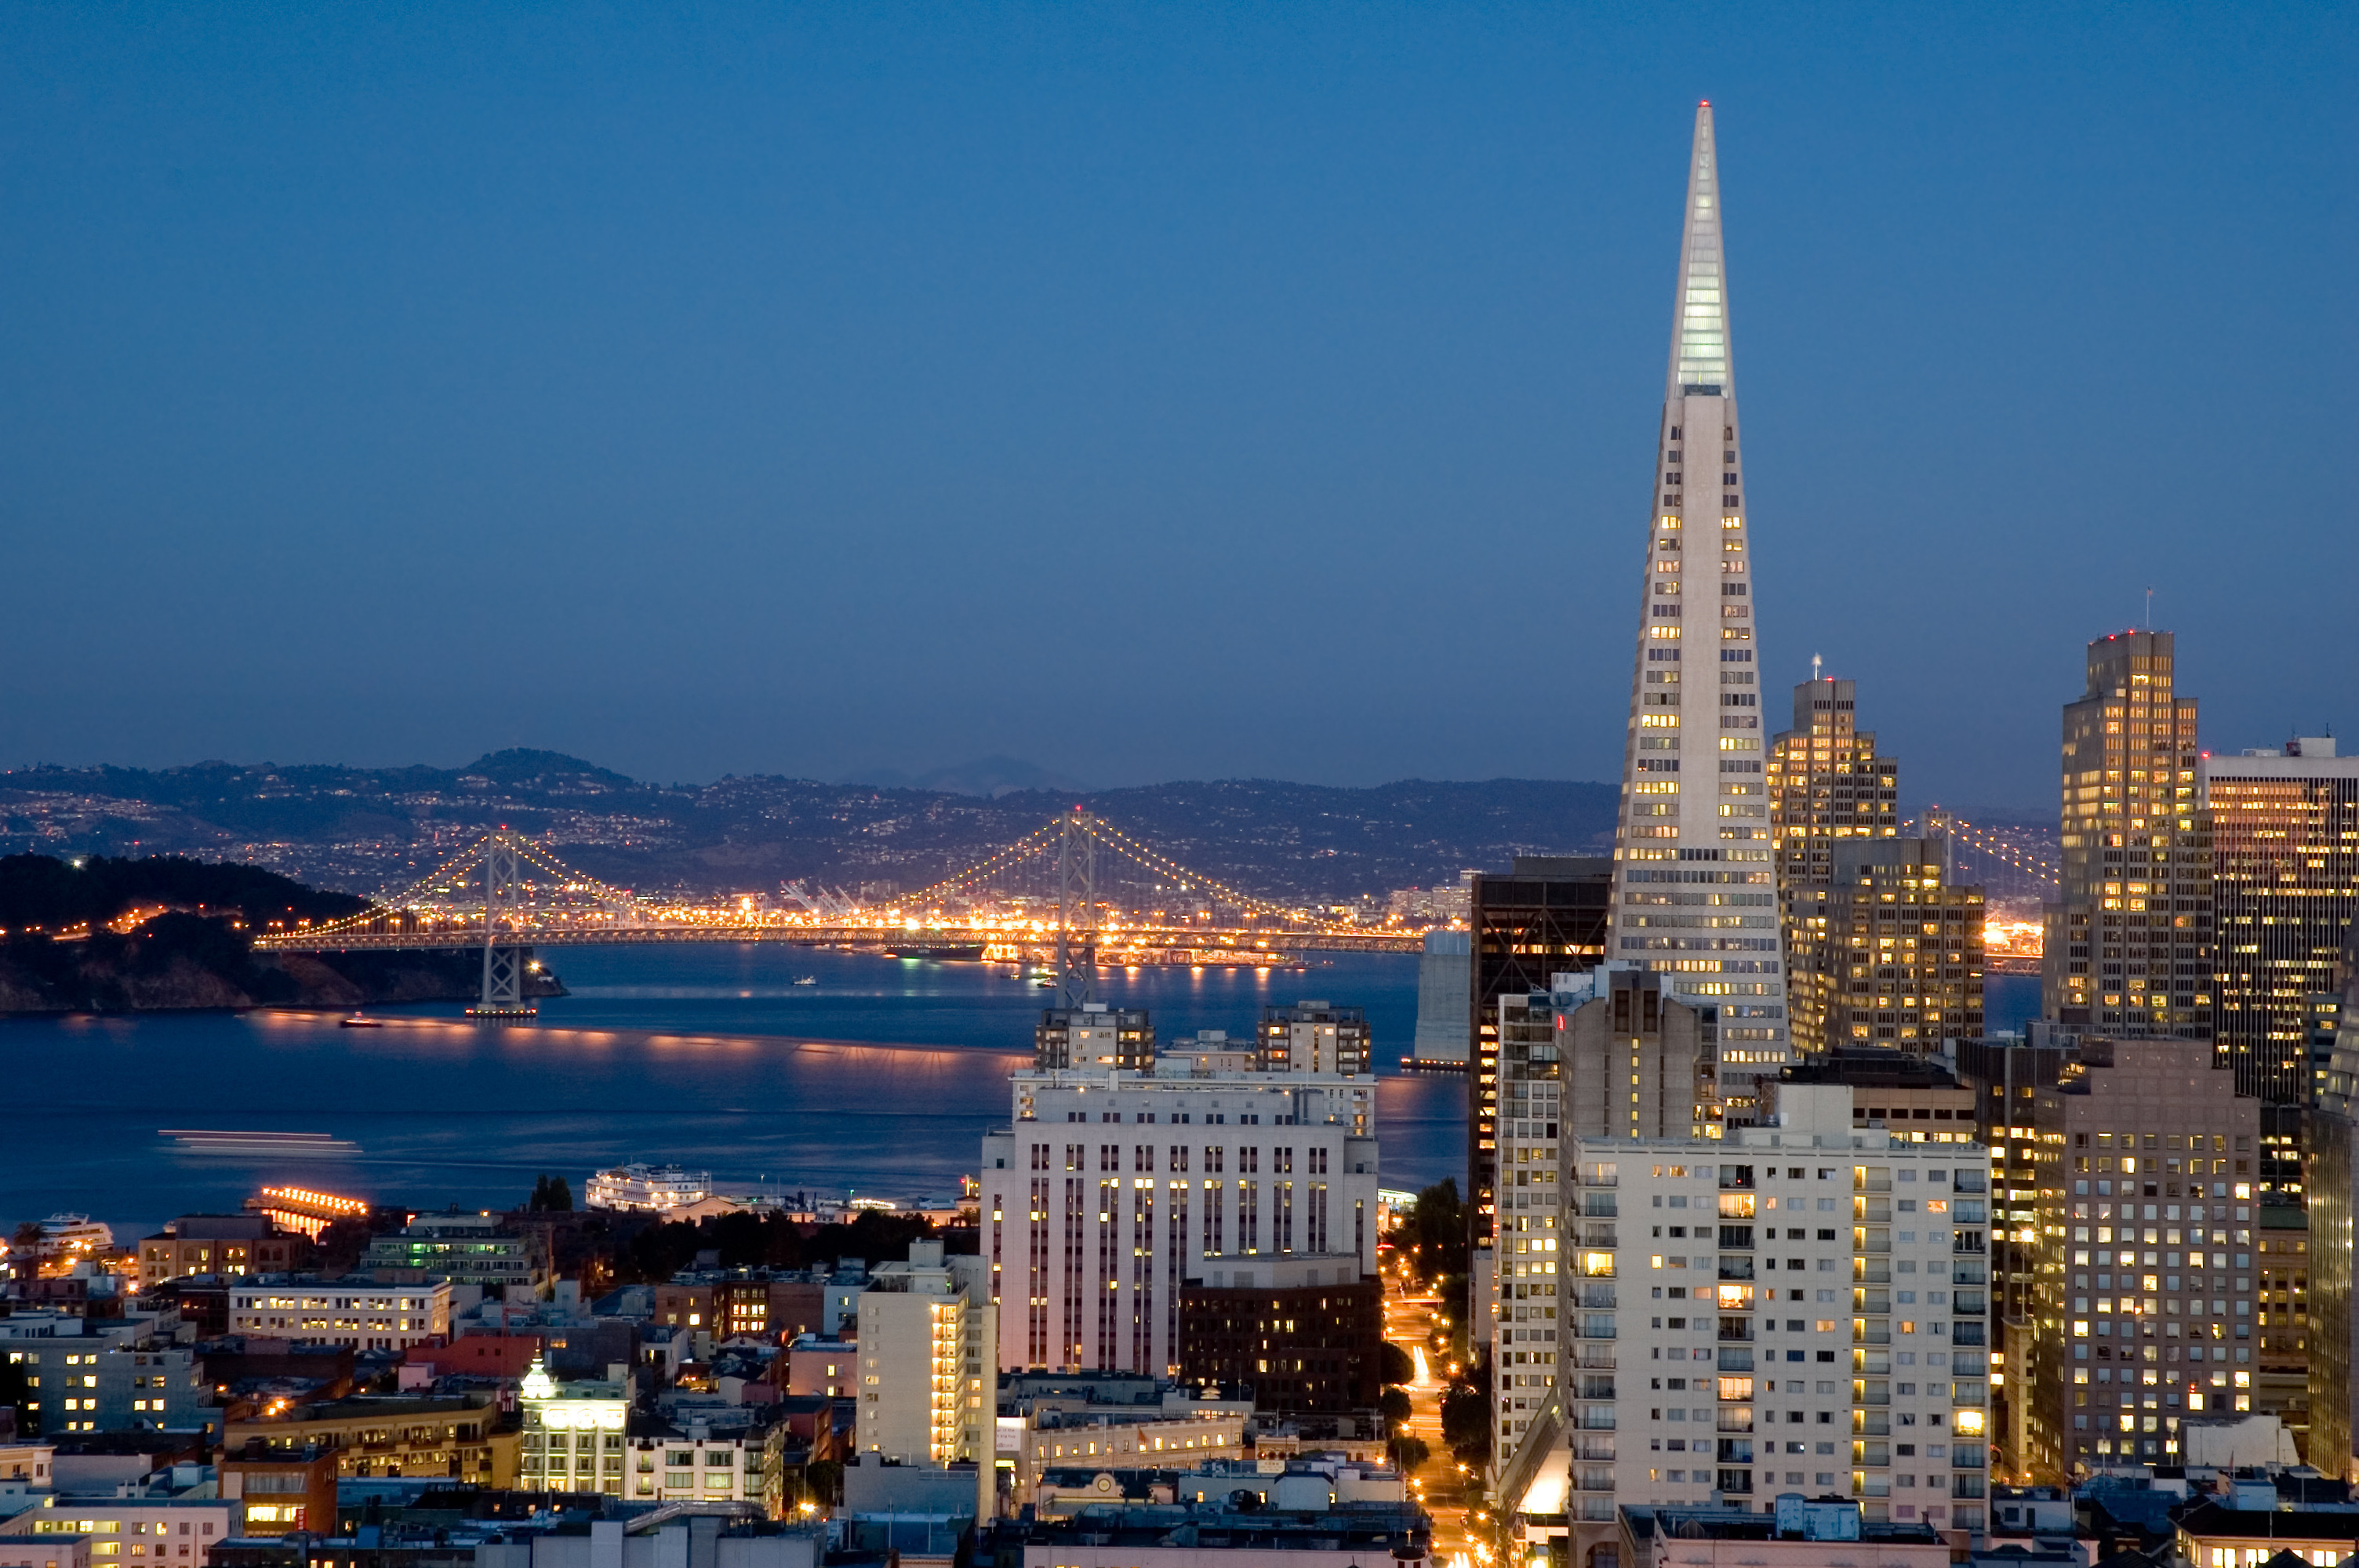 Best ideas about San Francisco Landscape
. Save or Pin San Francisco Landscape Now.